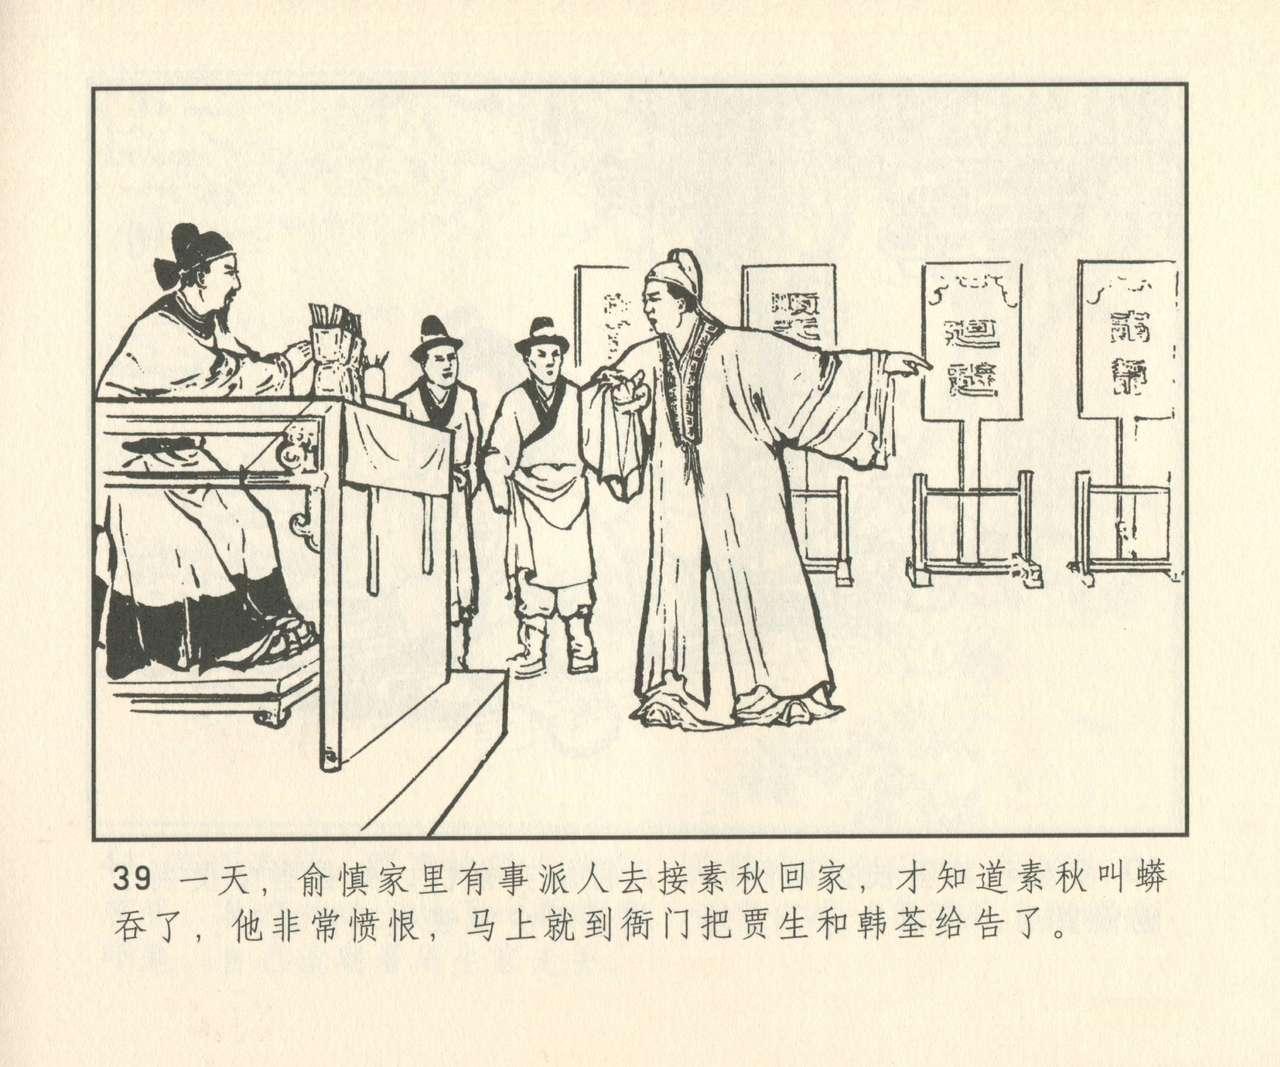 聊斋志异 张玮等绘 天津人民美术出版社 卷二十一 ~ 三十 319